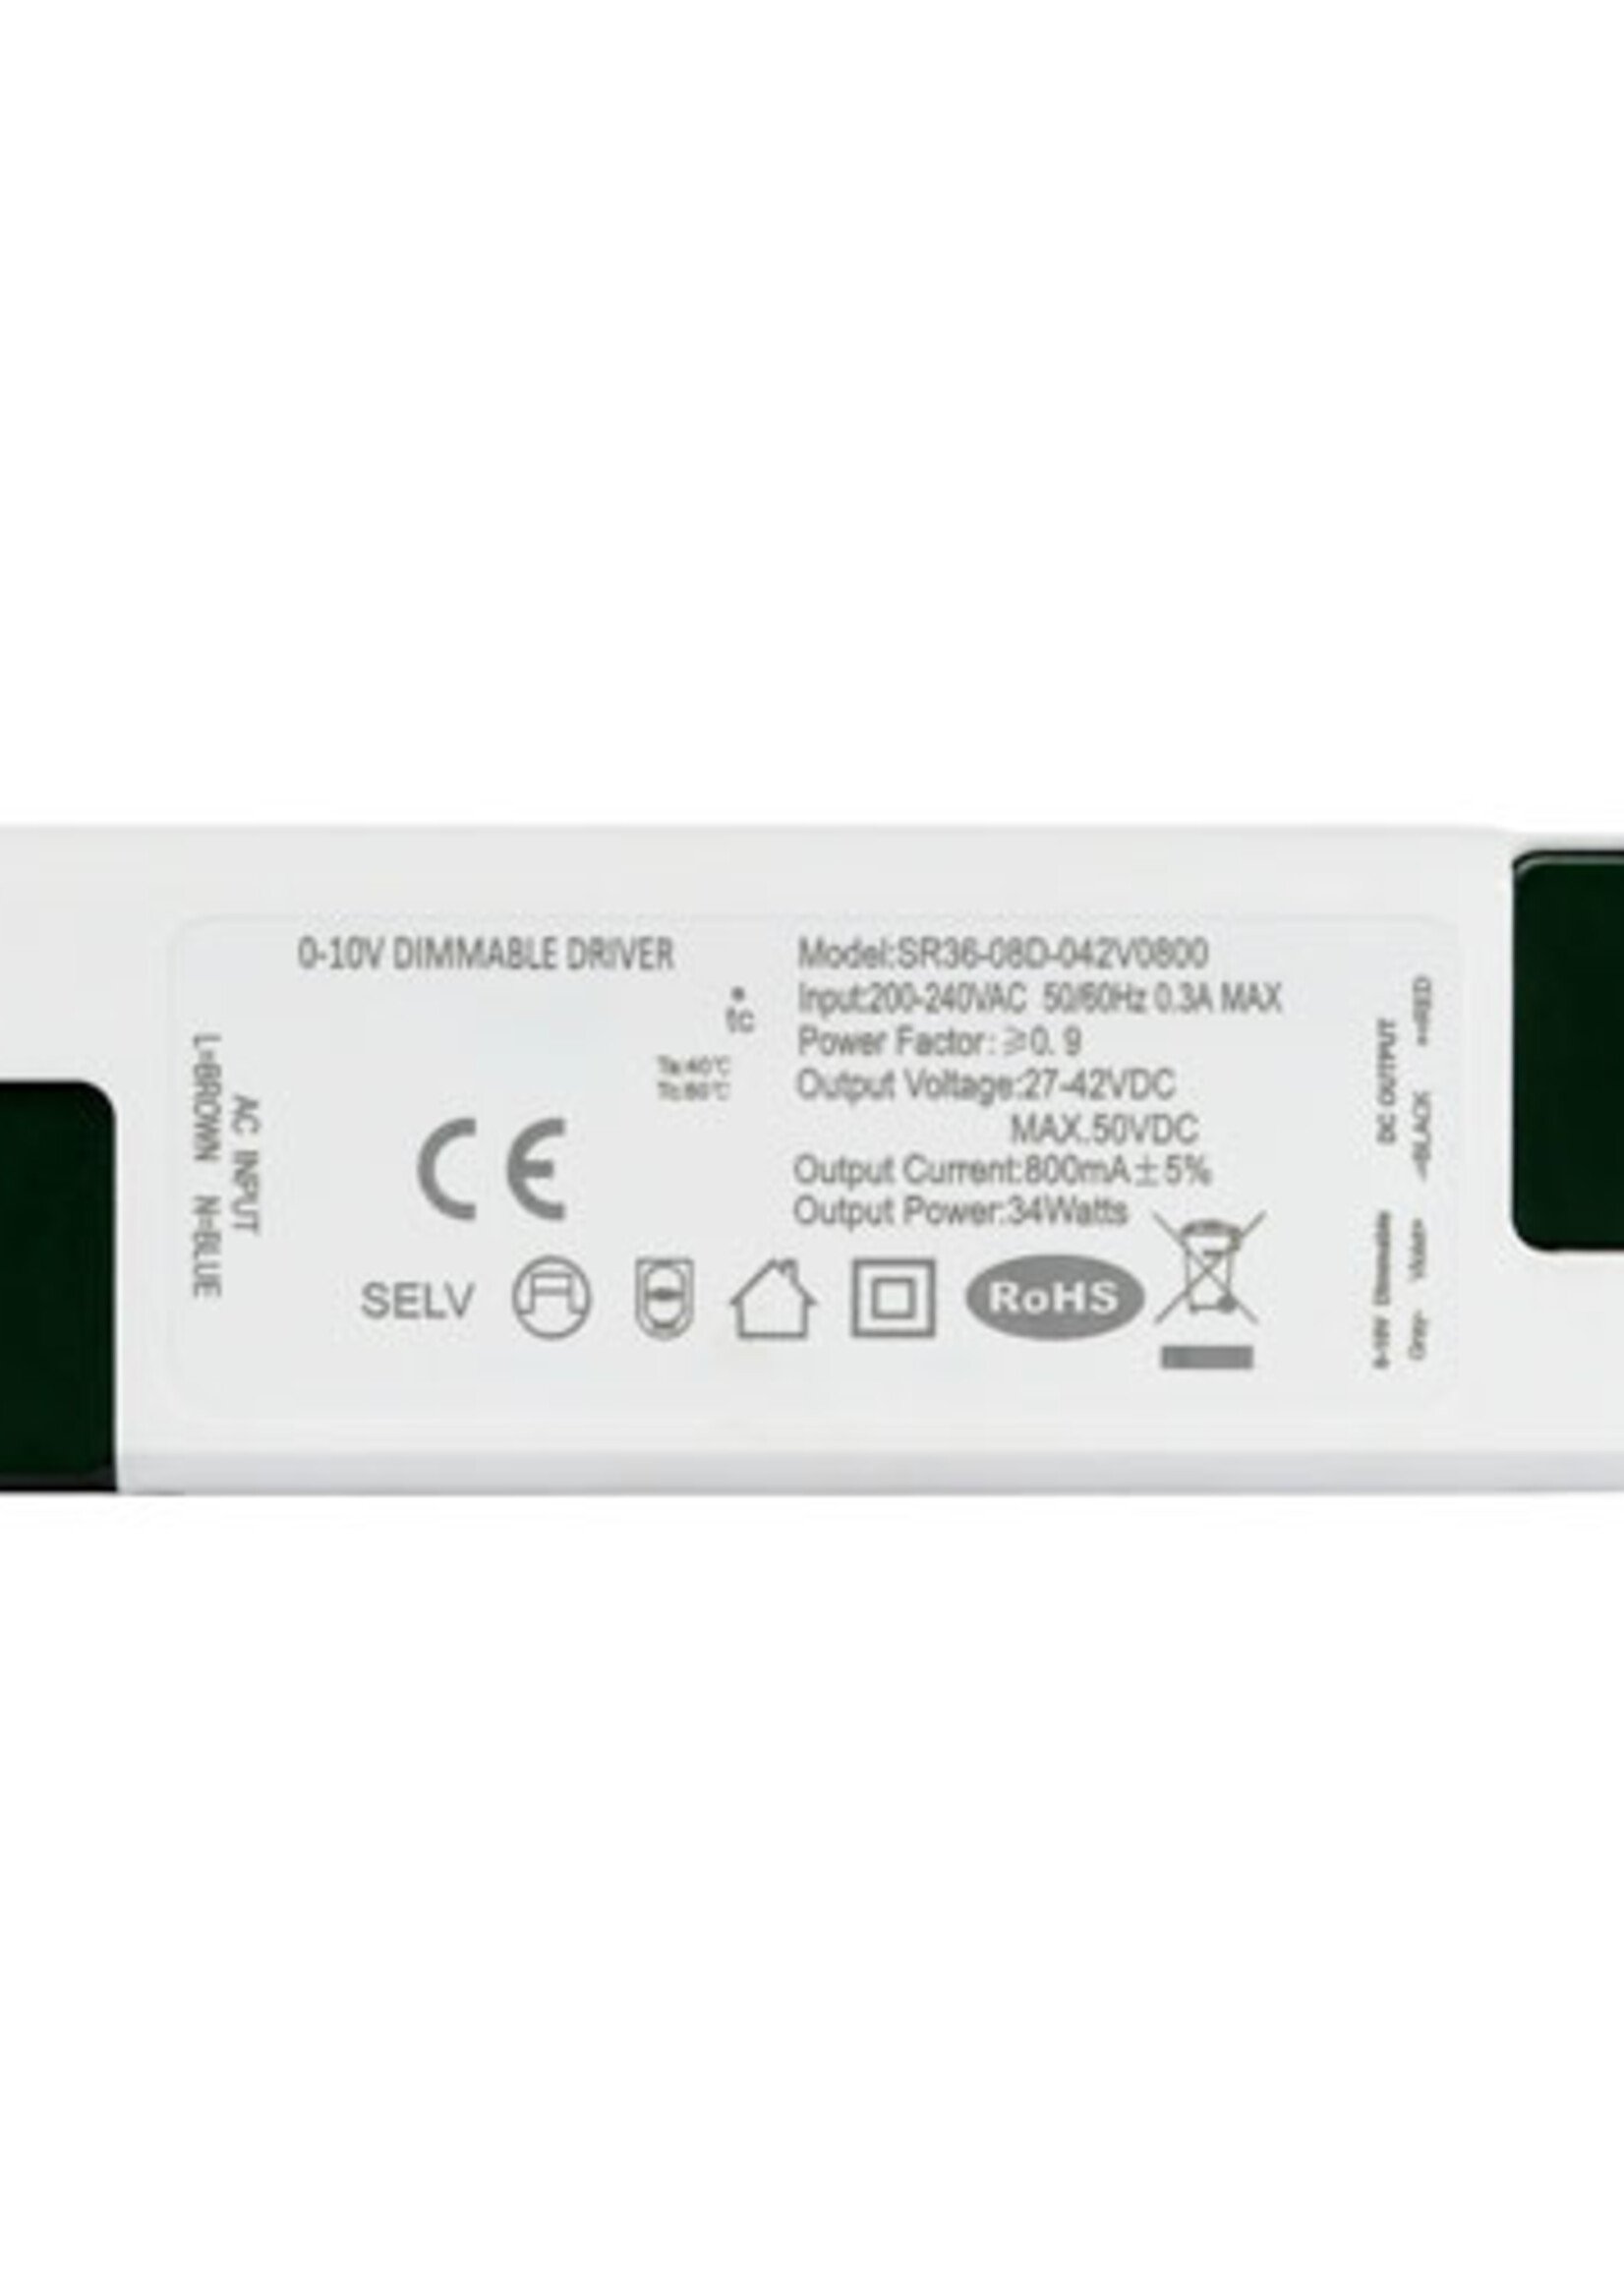 LEDWINKEL-Online LED Driver dimmable 0-10V 34W 800mA / 38W 900mA / 44W 1060mA